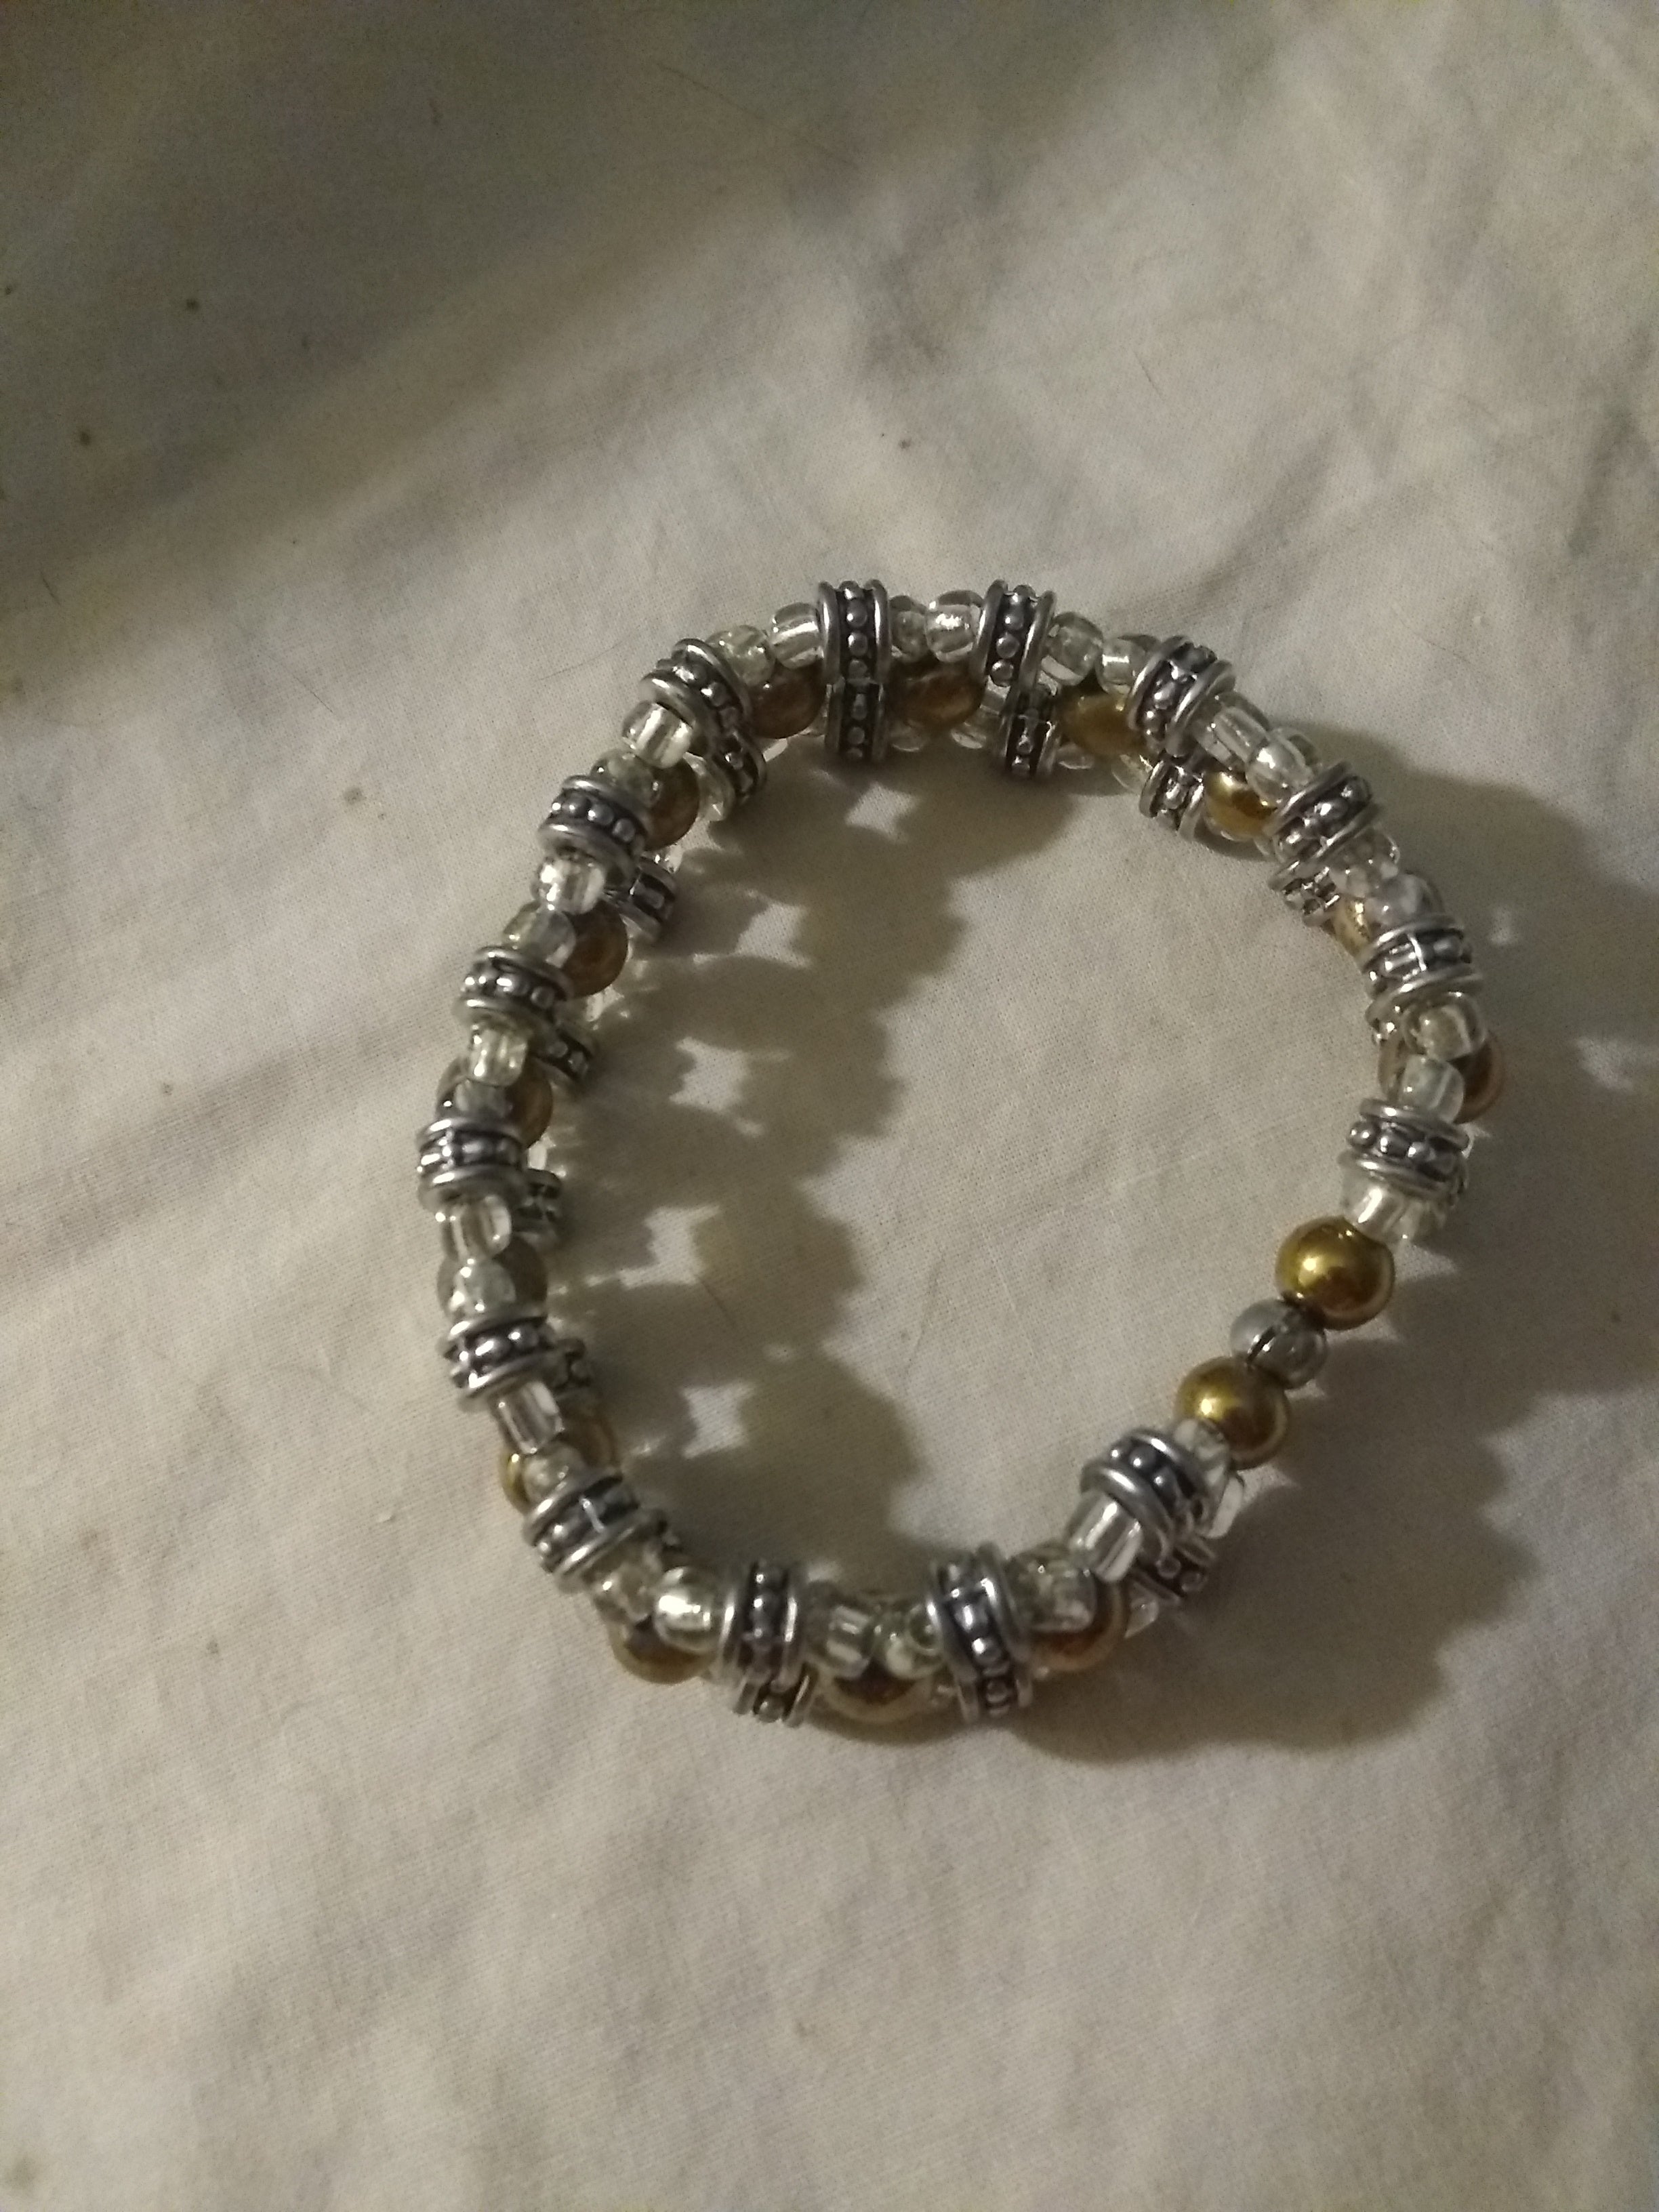 Tibetan silver and gold center beaded bracelet